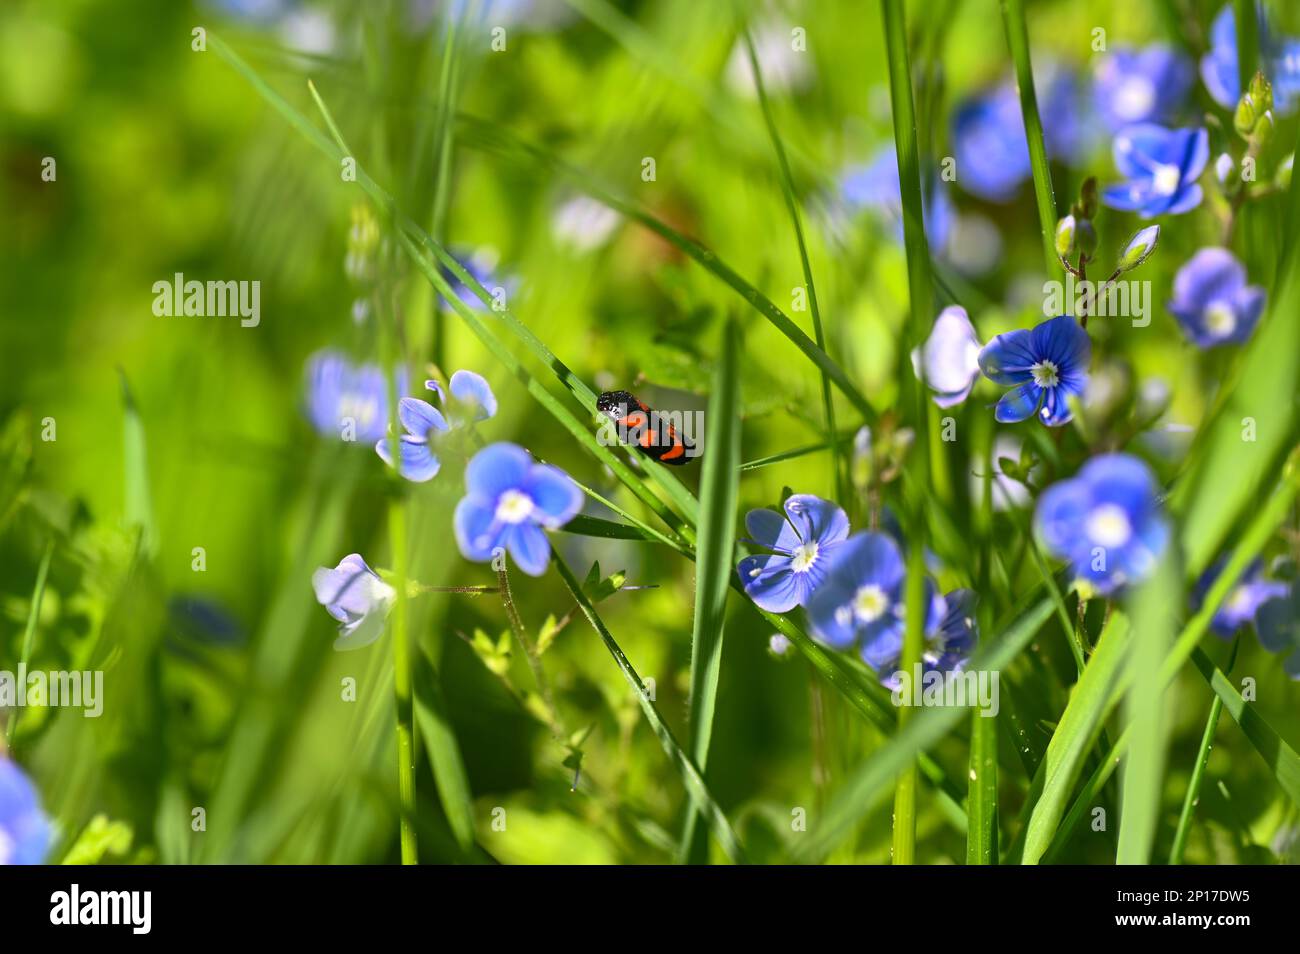 Ein Blatthupfer ( Cercopidae ) sitzt auf einer Pflanze auf einer grünen Wiese zwischen blauen Blumen Stockfoto